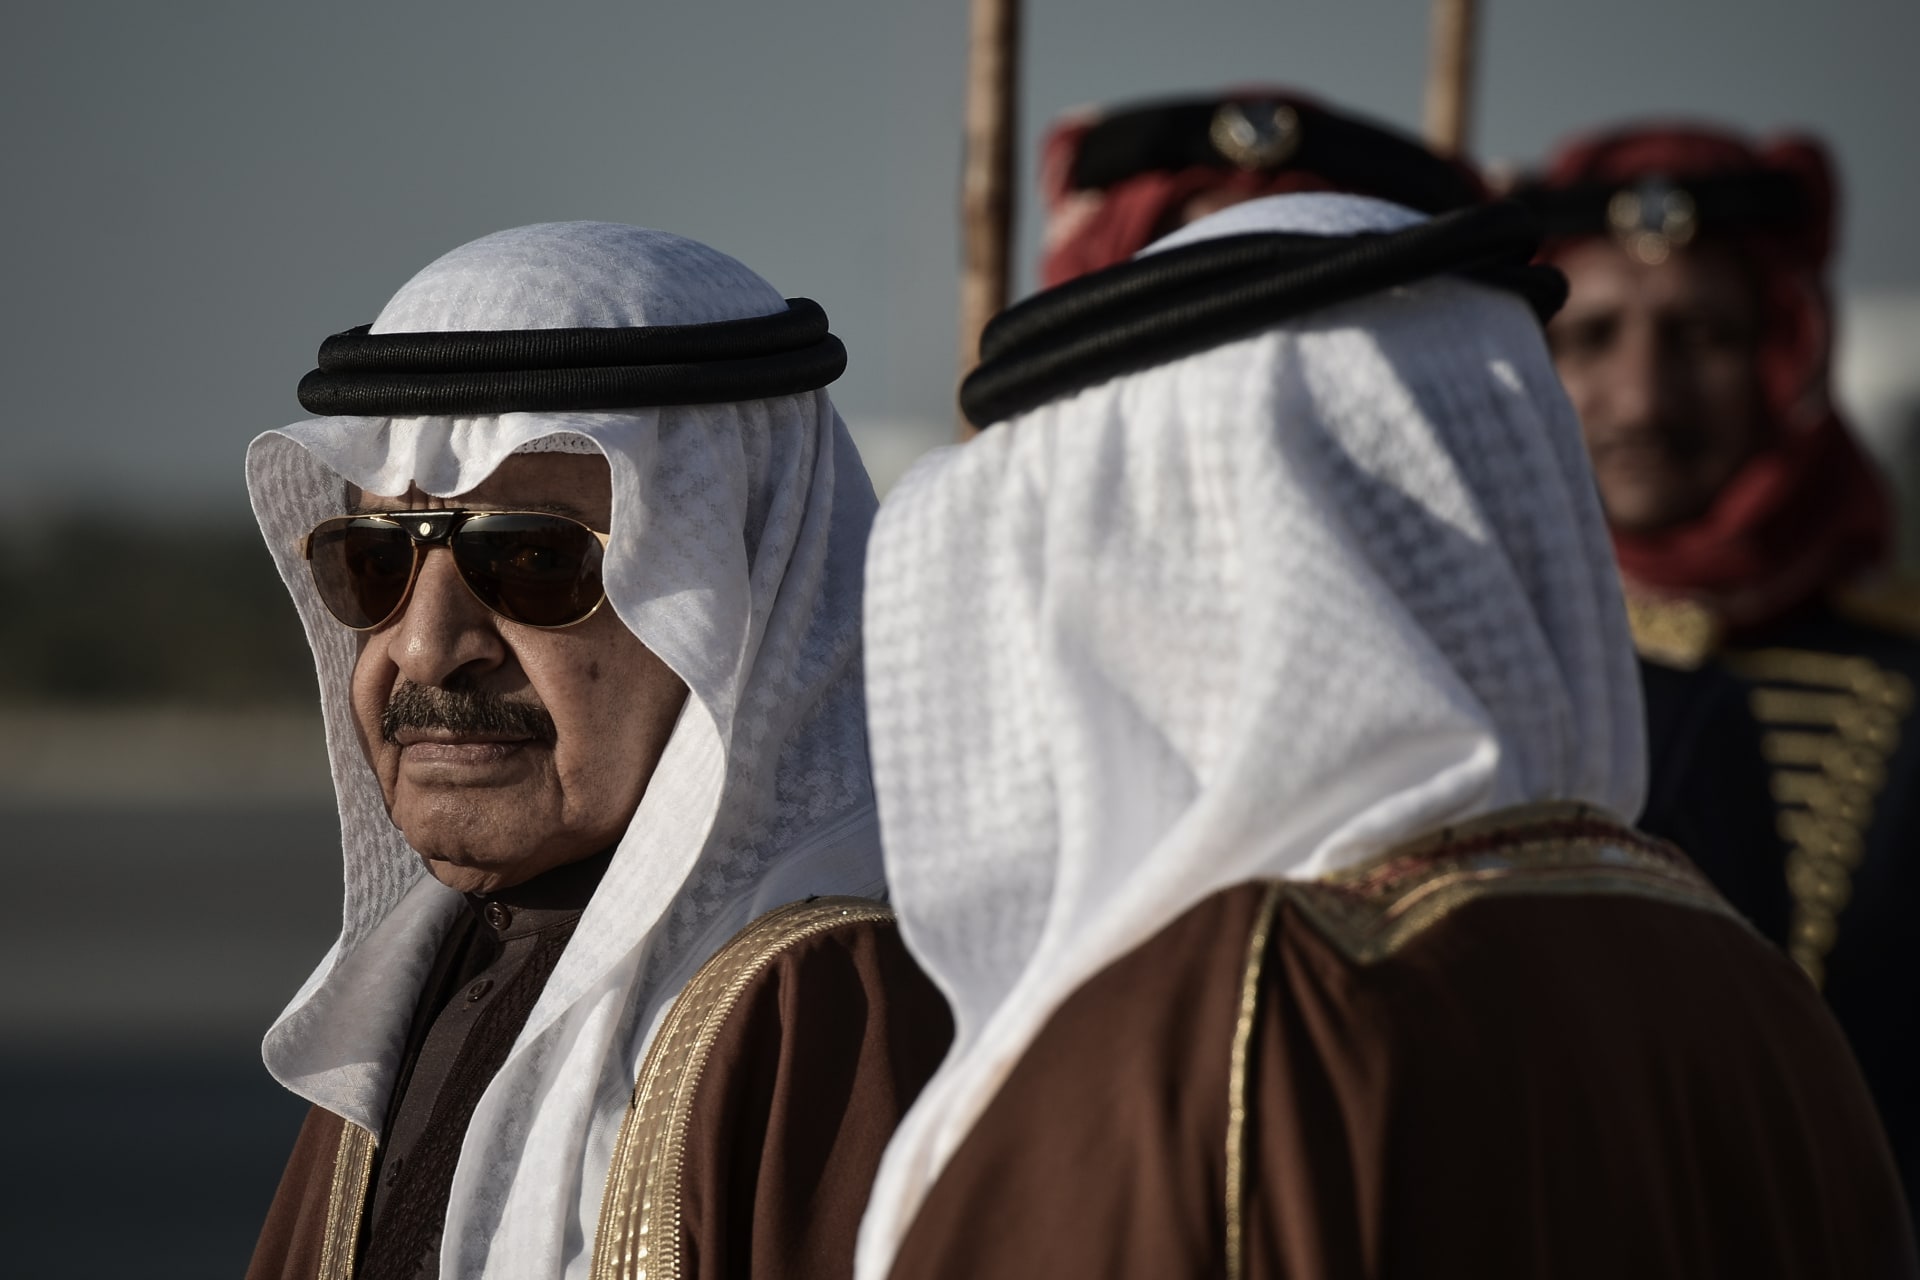 البحرين.. وفاة رئيس الوزراء خليفة بن سلمان آل خليفة في أمريكا عن عمر يناهز 84 عاما